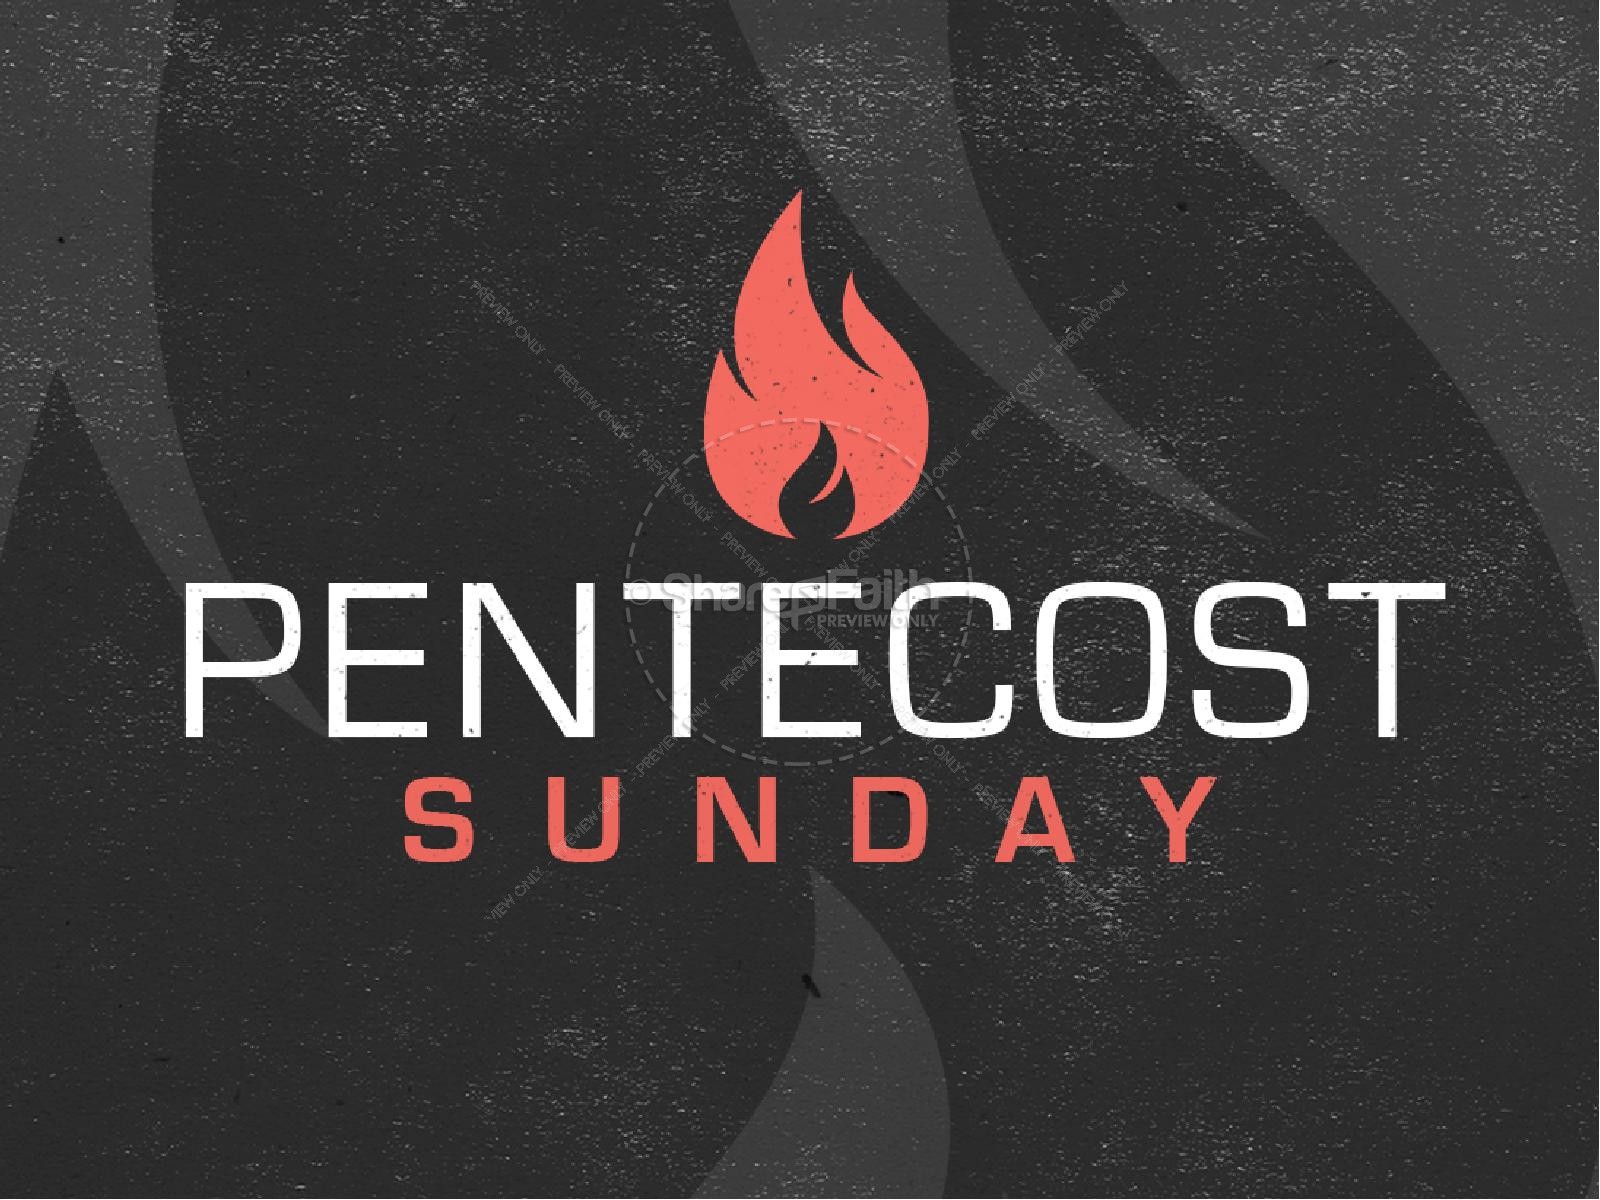 Pentecost Sunday Ministry PowerPoint Thumbnail 1